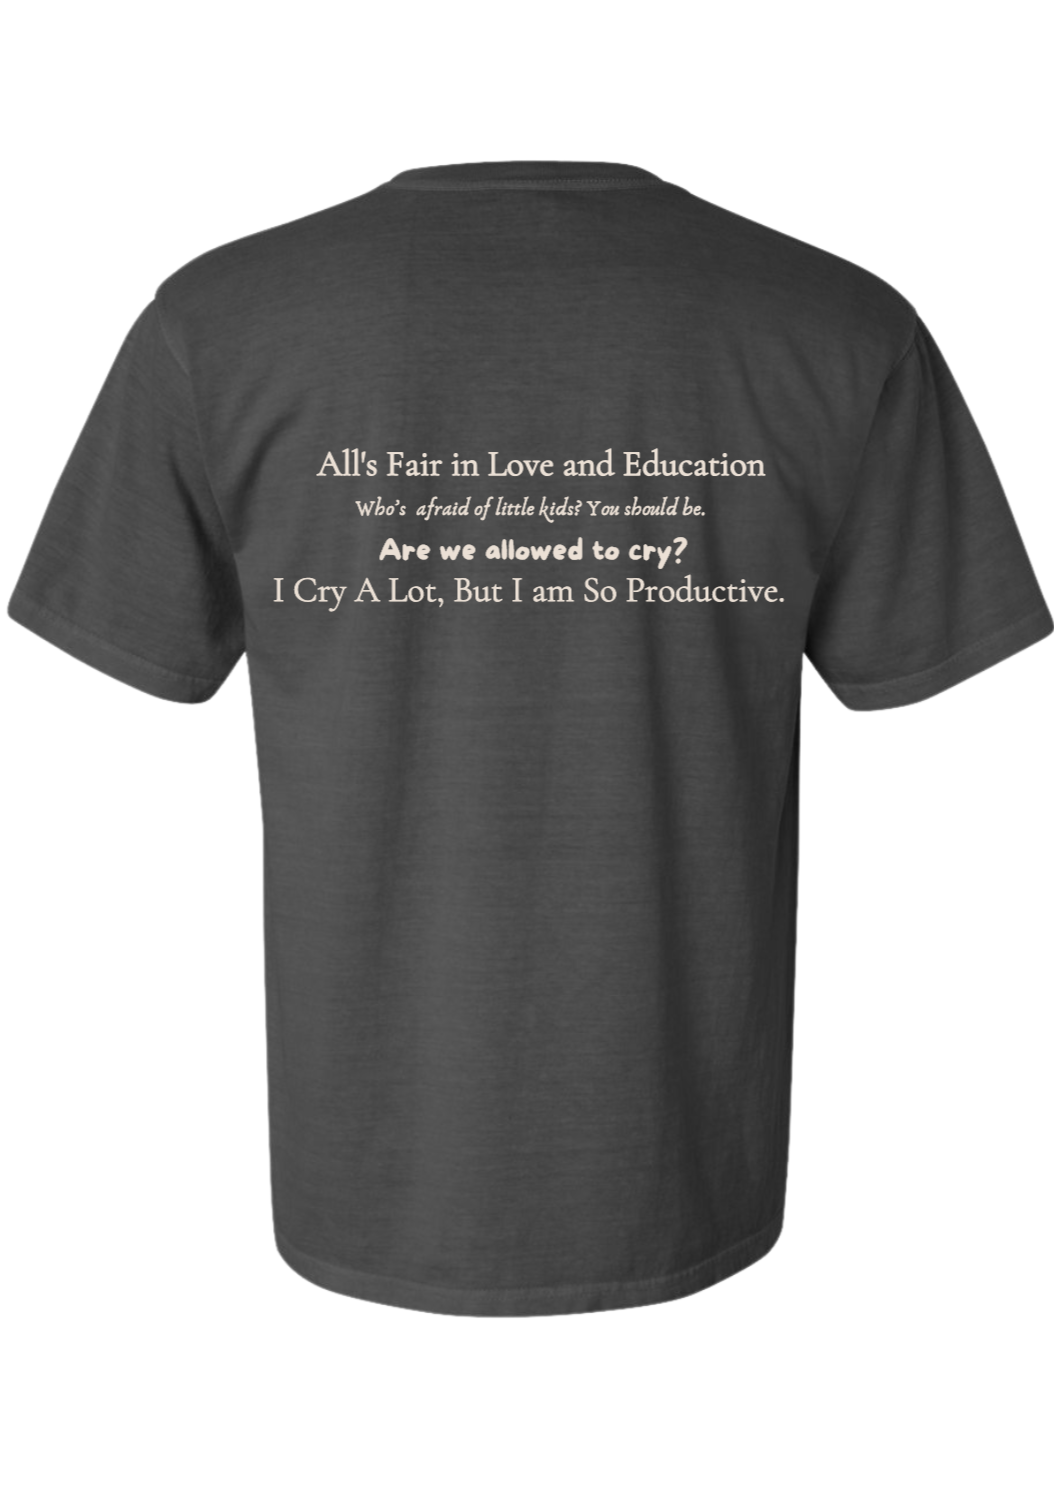 the tired teachers department t-shirt